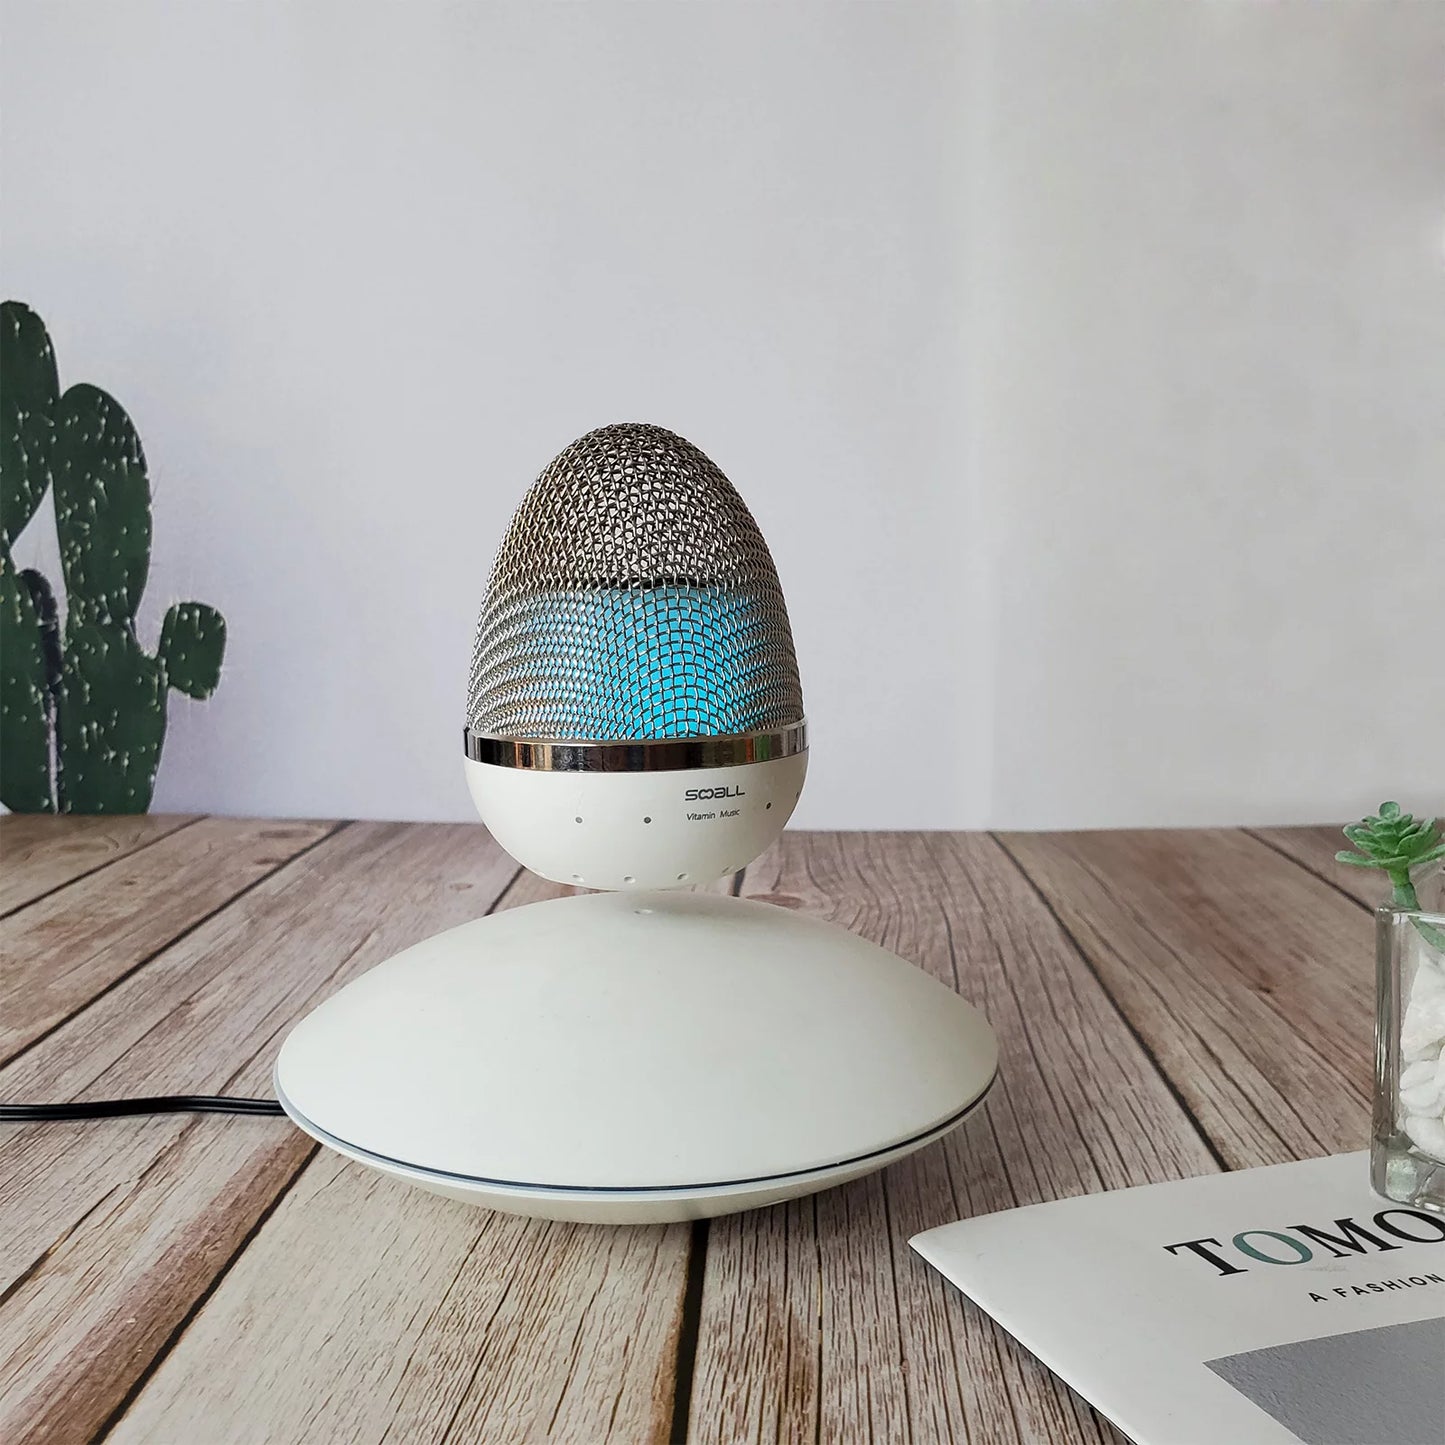 Magnetic Levitating Bluetooth Egg Shape Speaker